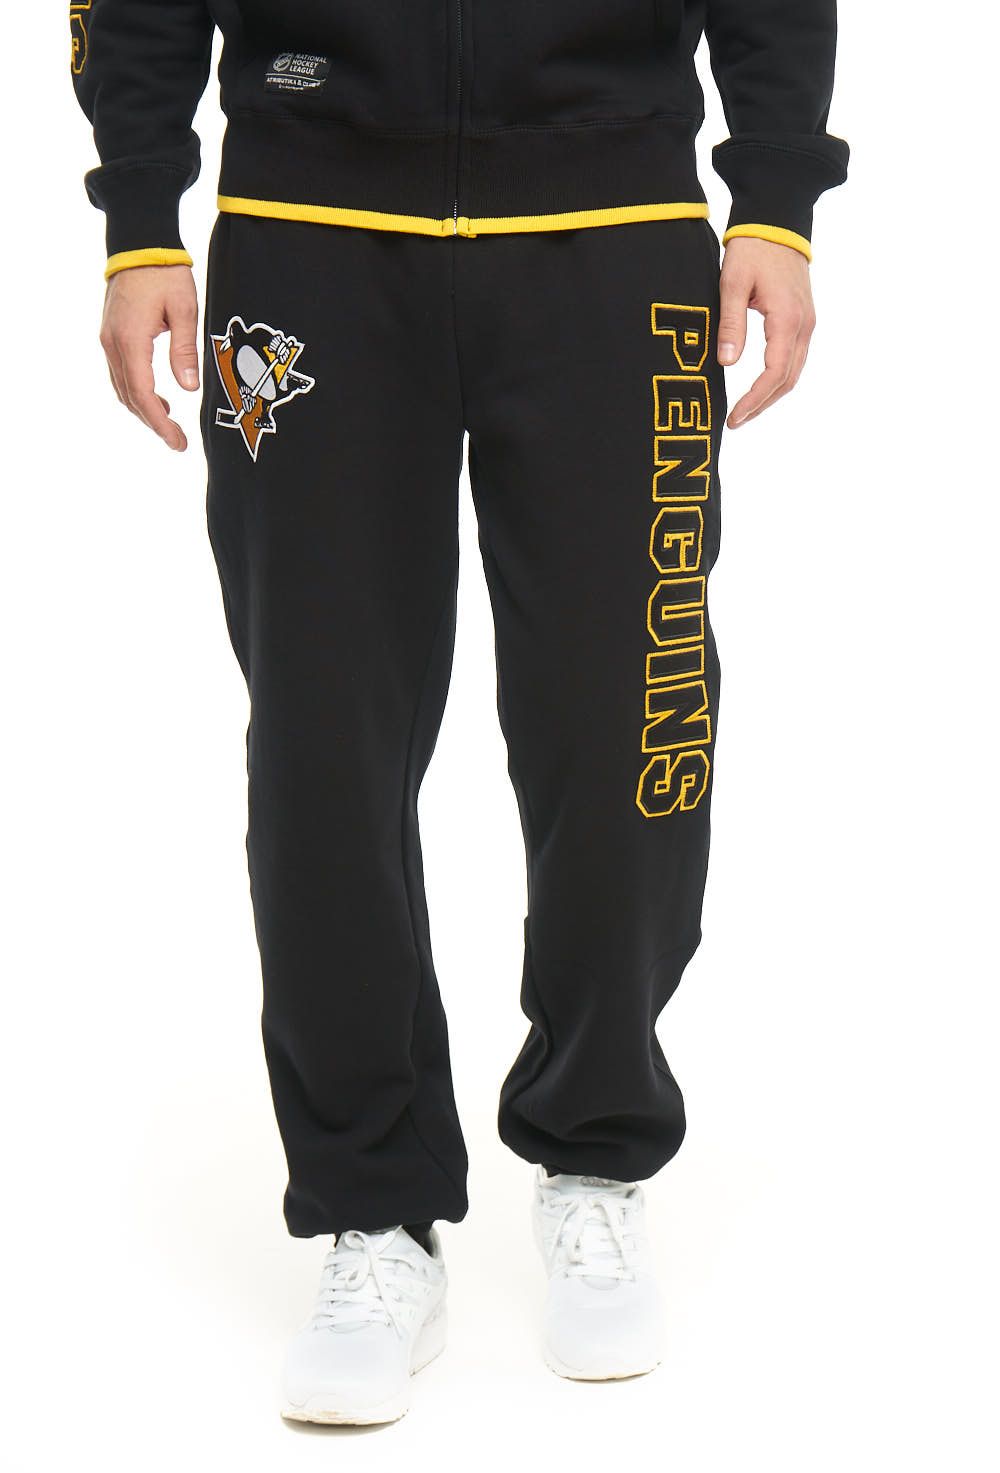 Спортивные брюки мужские Atributika&Club Питтсбург Пингвинз 45920 черные 3XL